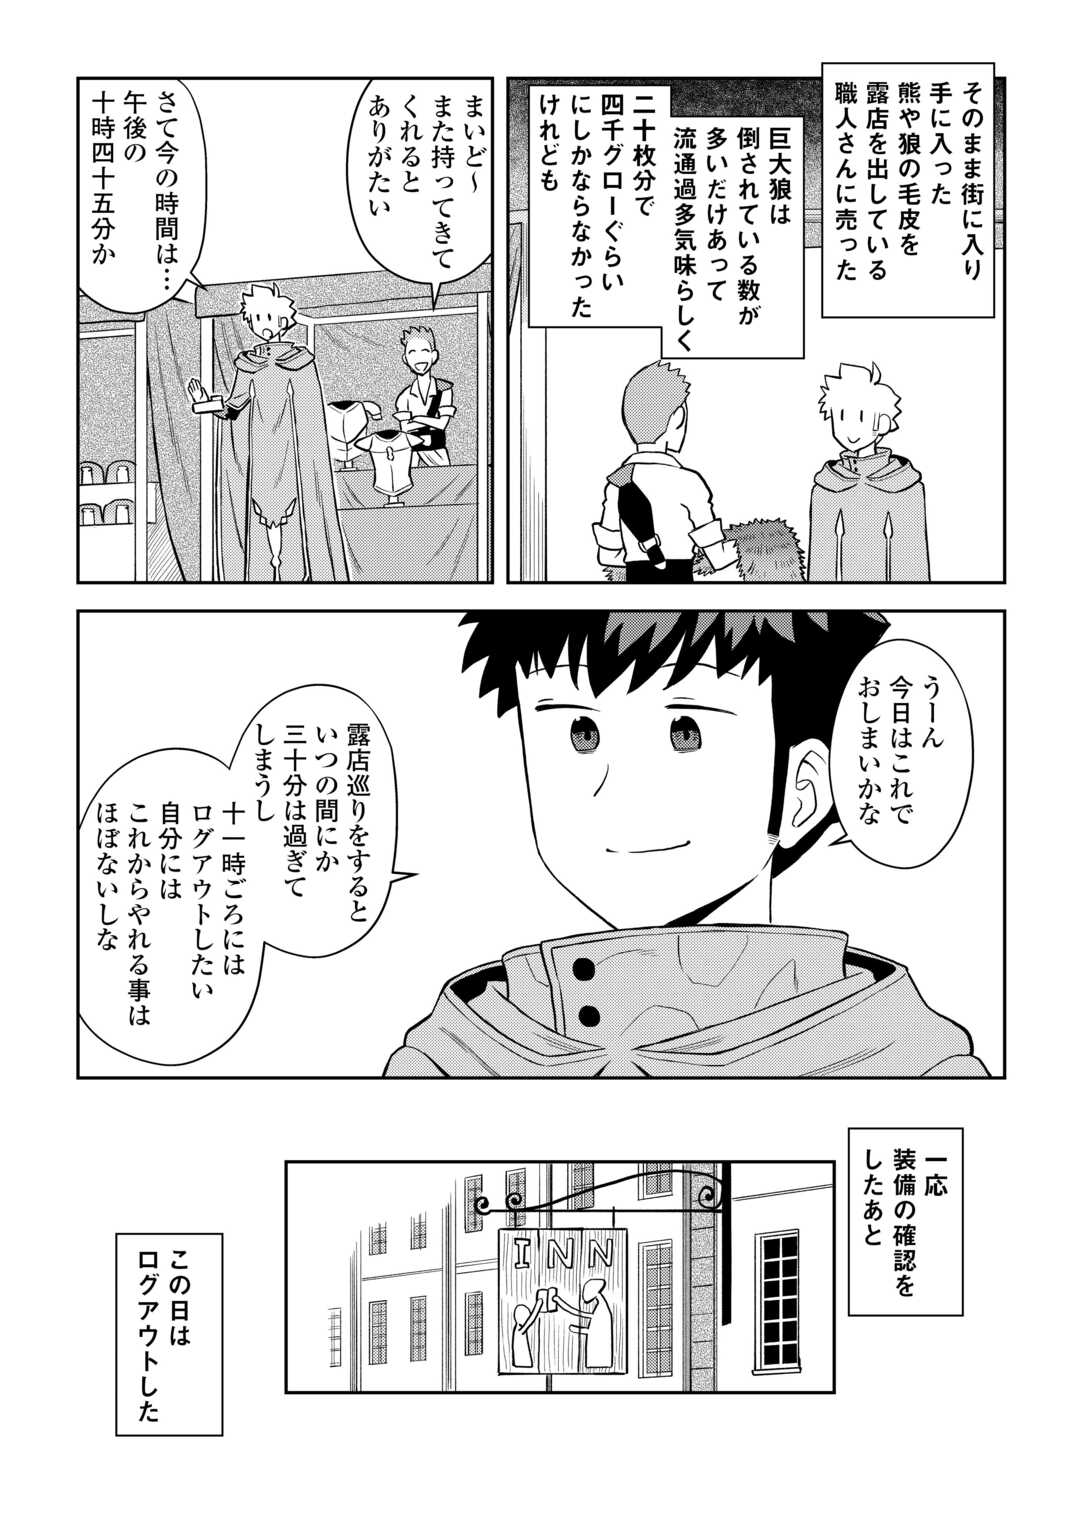 Toaru Ossan no VRMMO Katsudouki - Chapter 94 - Page 18